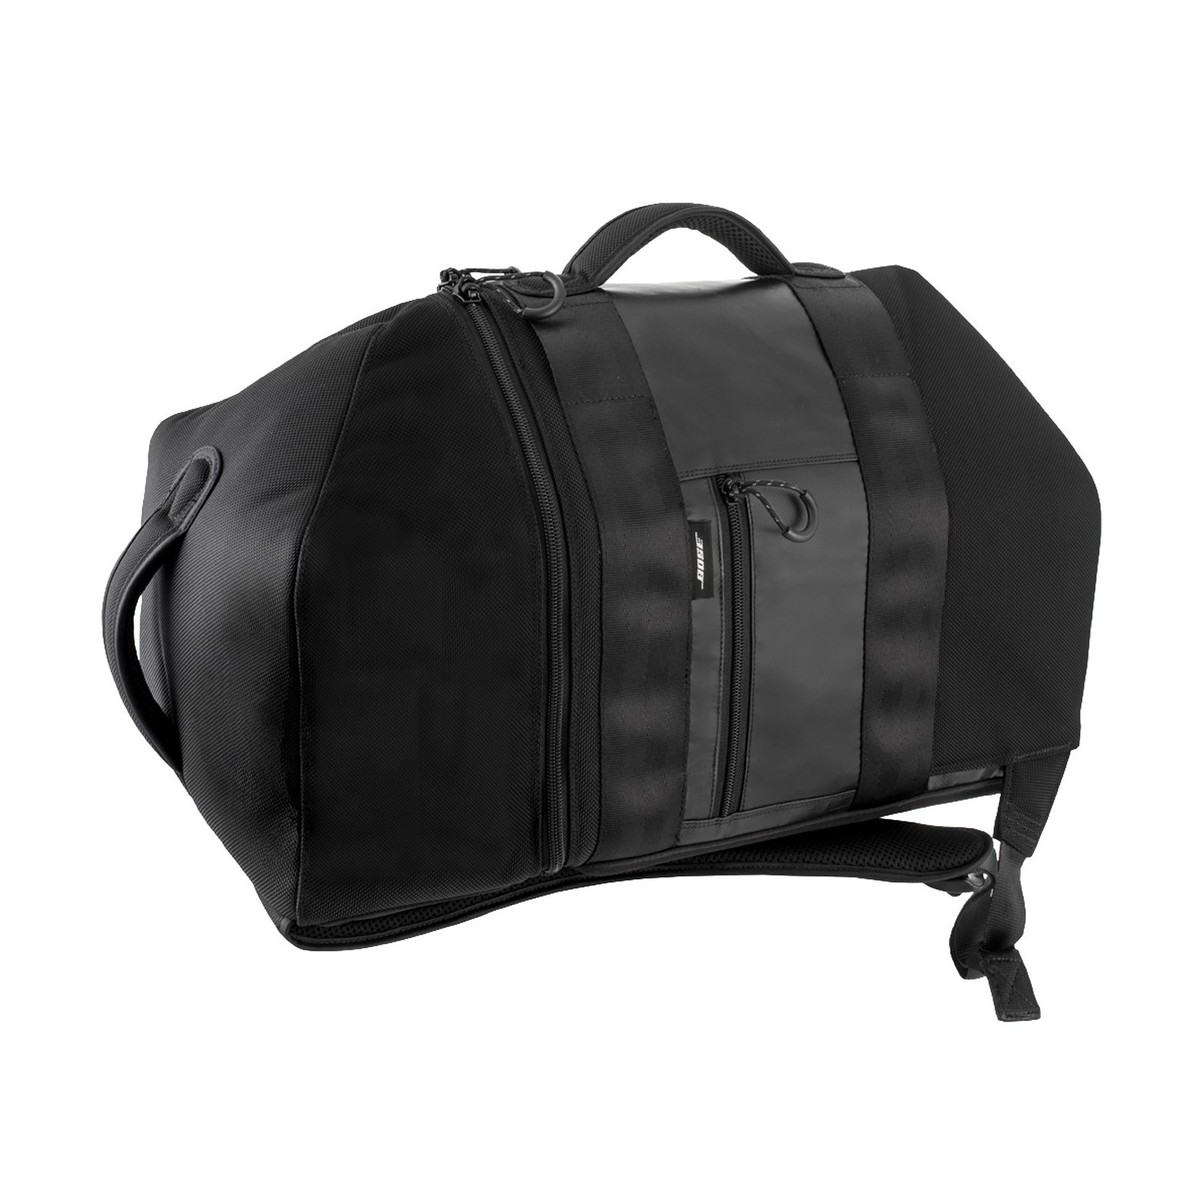 Bose Sac À Dos S1pro - Bag for speakers & subwoofer - Variation 1